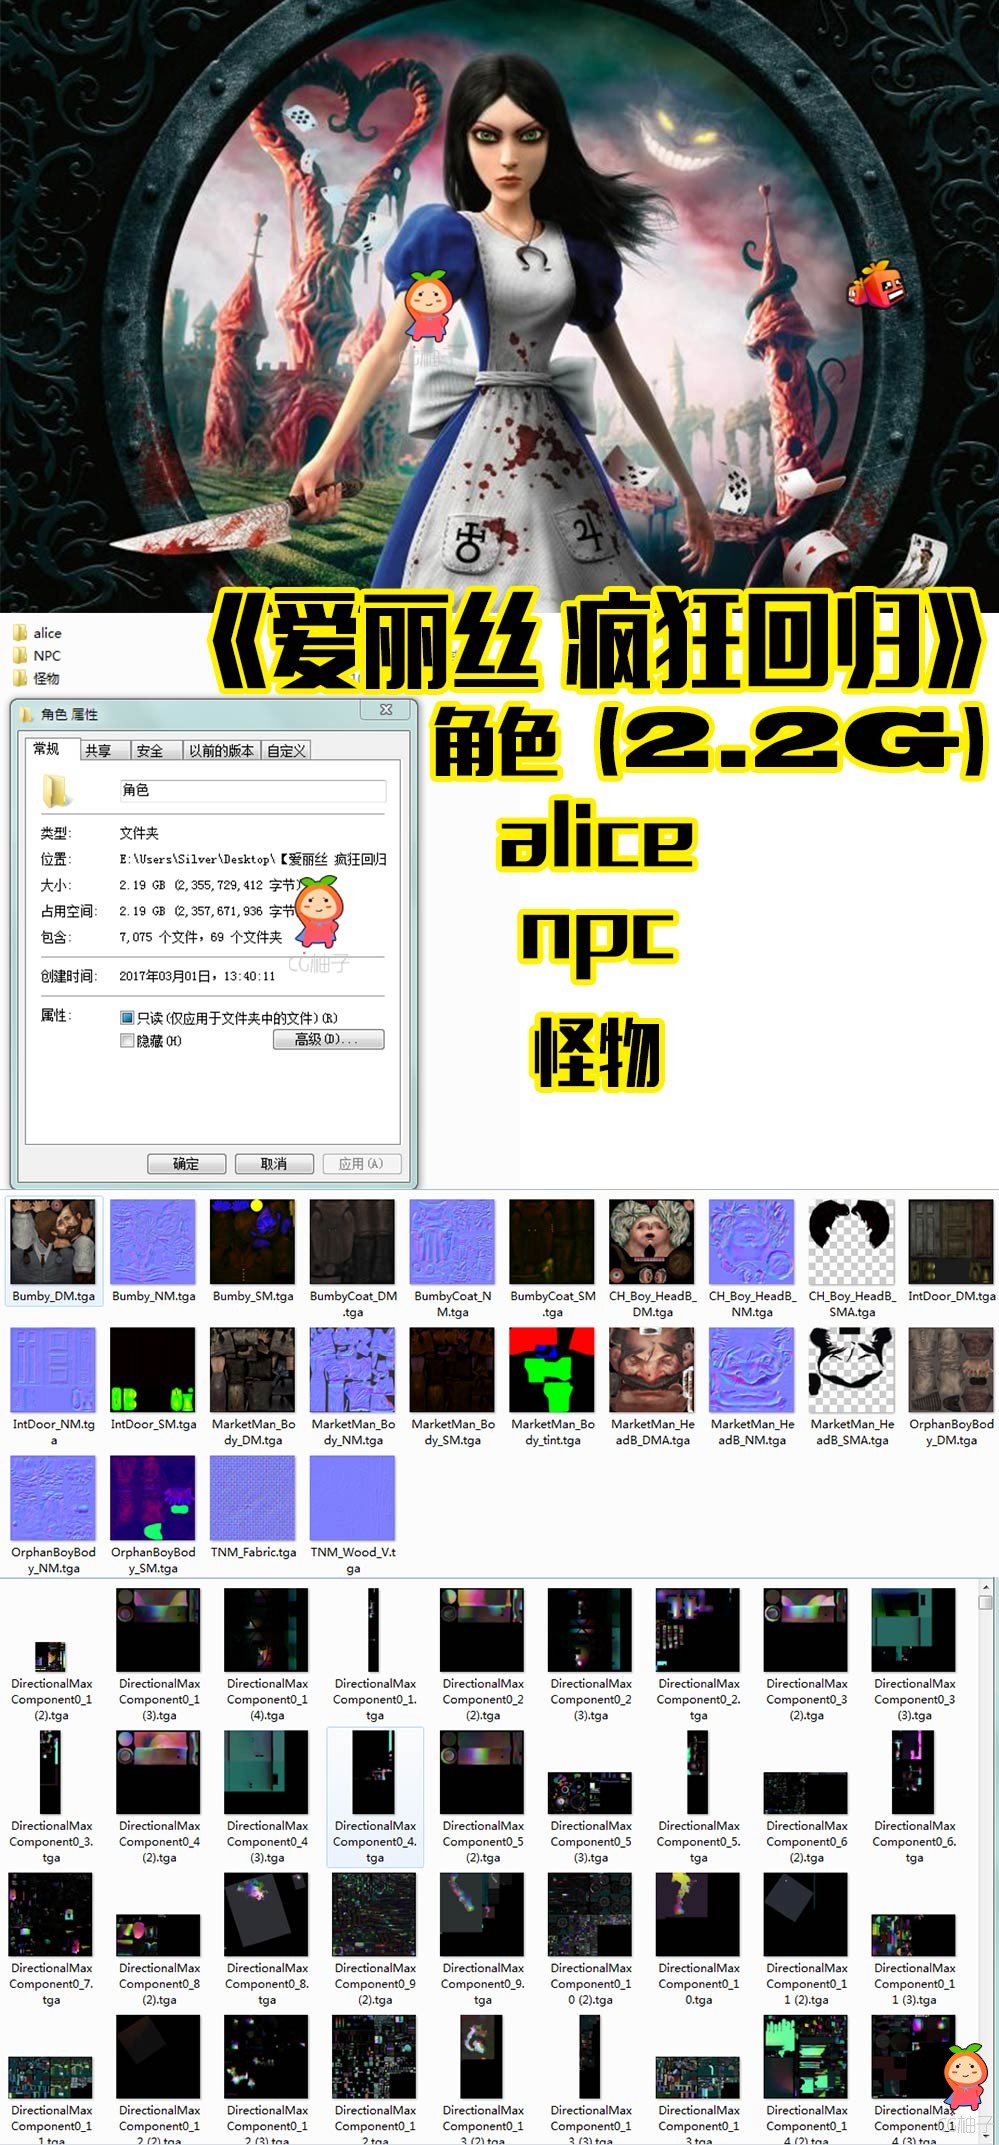 《爱丽丝 疯狂回归》alice,npc,怪物成套资源,解压后【2.2GB】